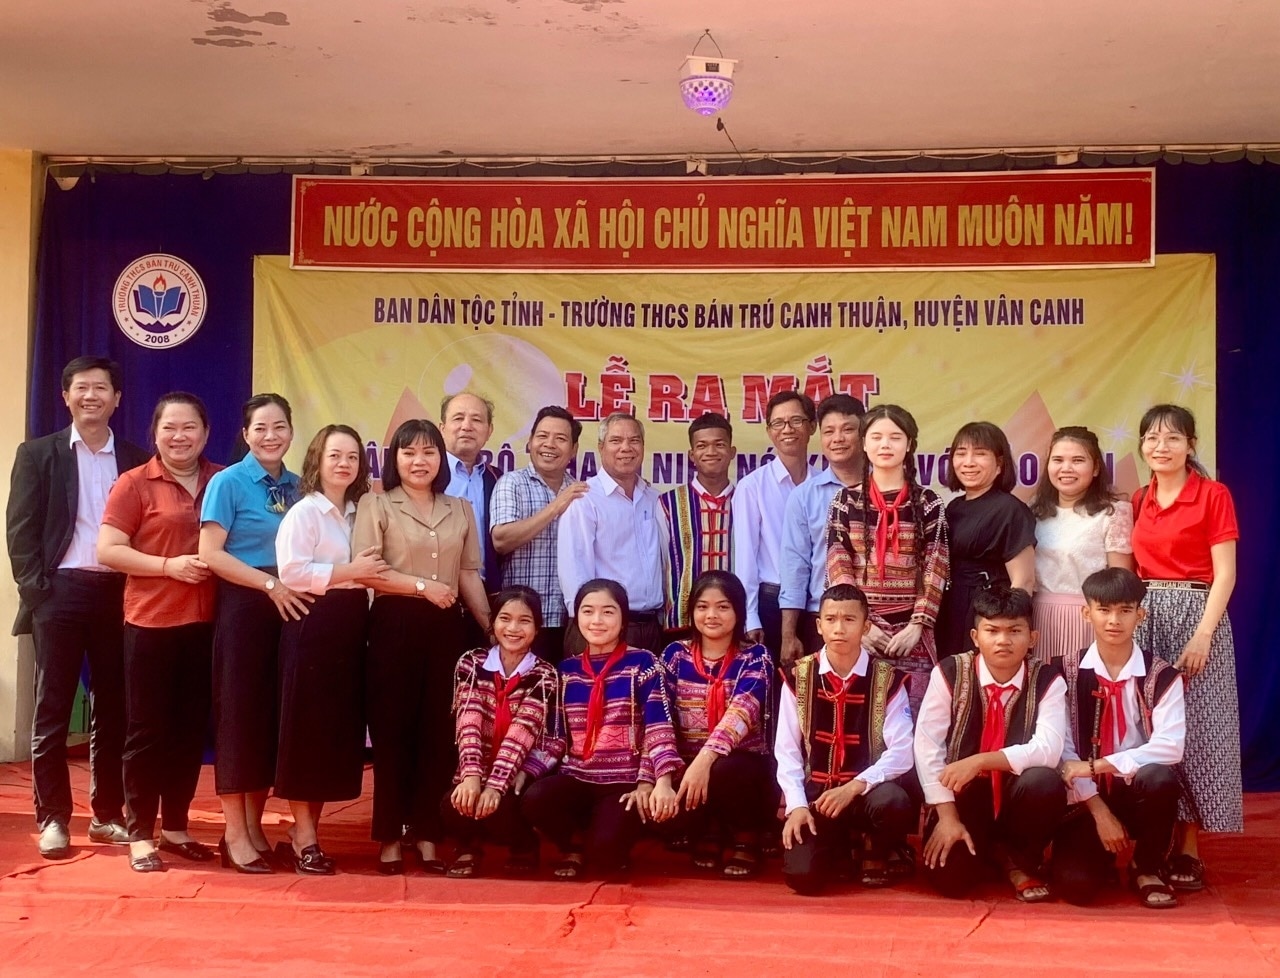 Lễ ra mắt CLB “Thanh niên nói không với tảo hôn và hôn nhân cận huyết thống” tại Trường THCS Bán trú Canh Thuận.